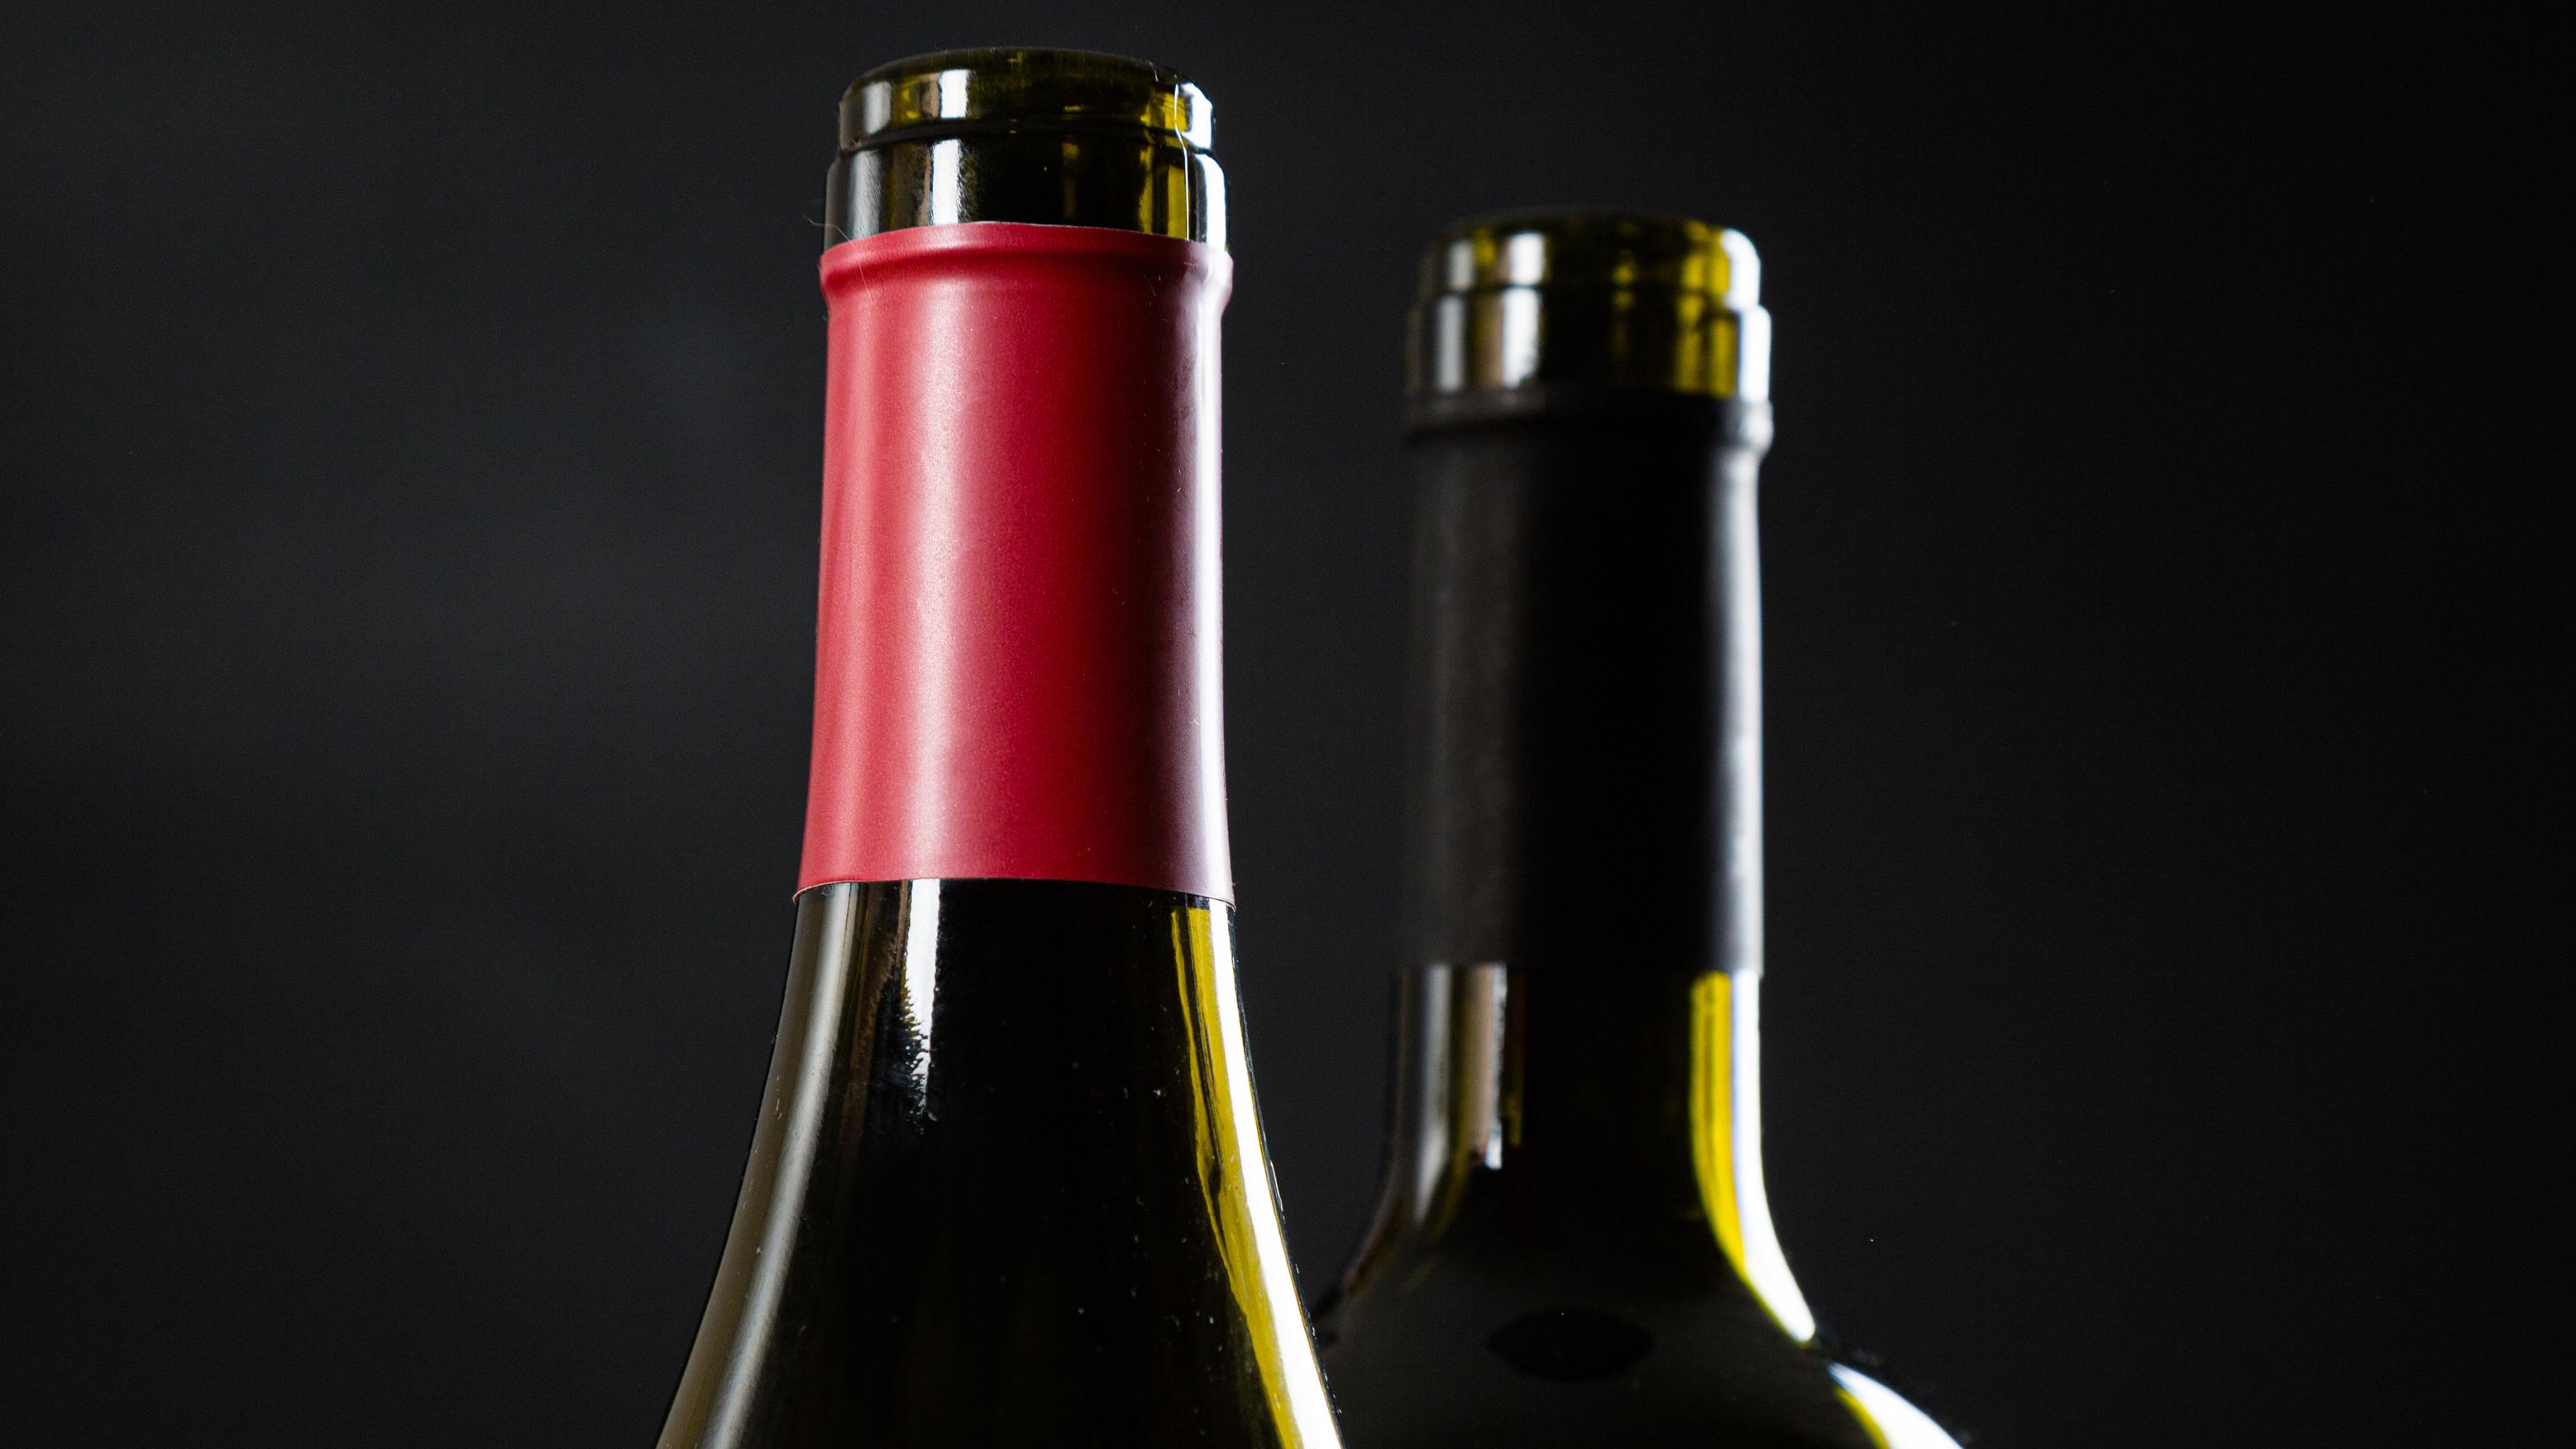 Comment bien conserver un vin ouvert?